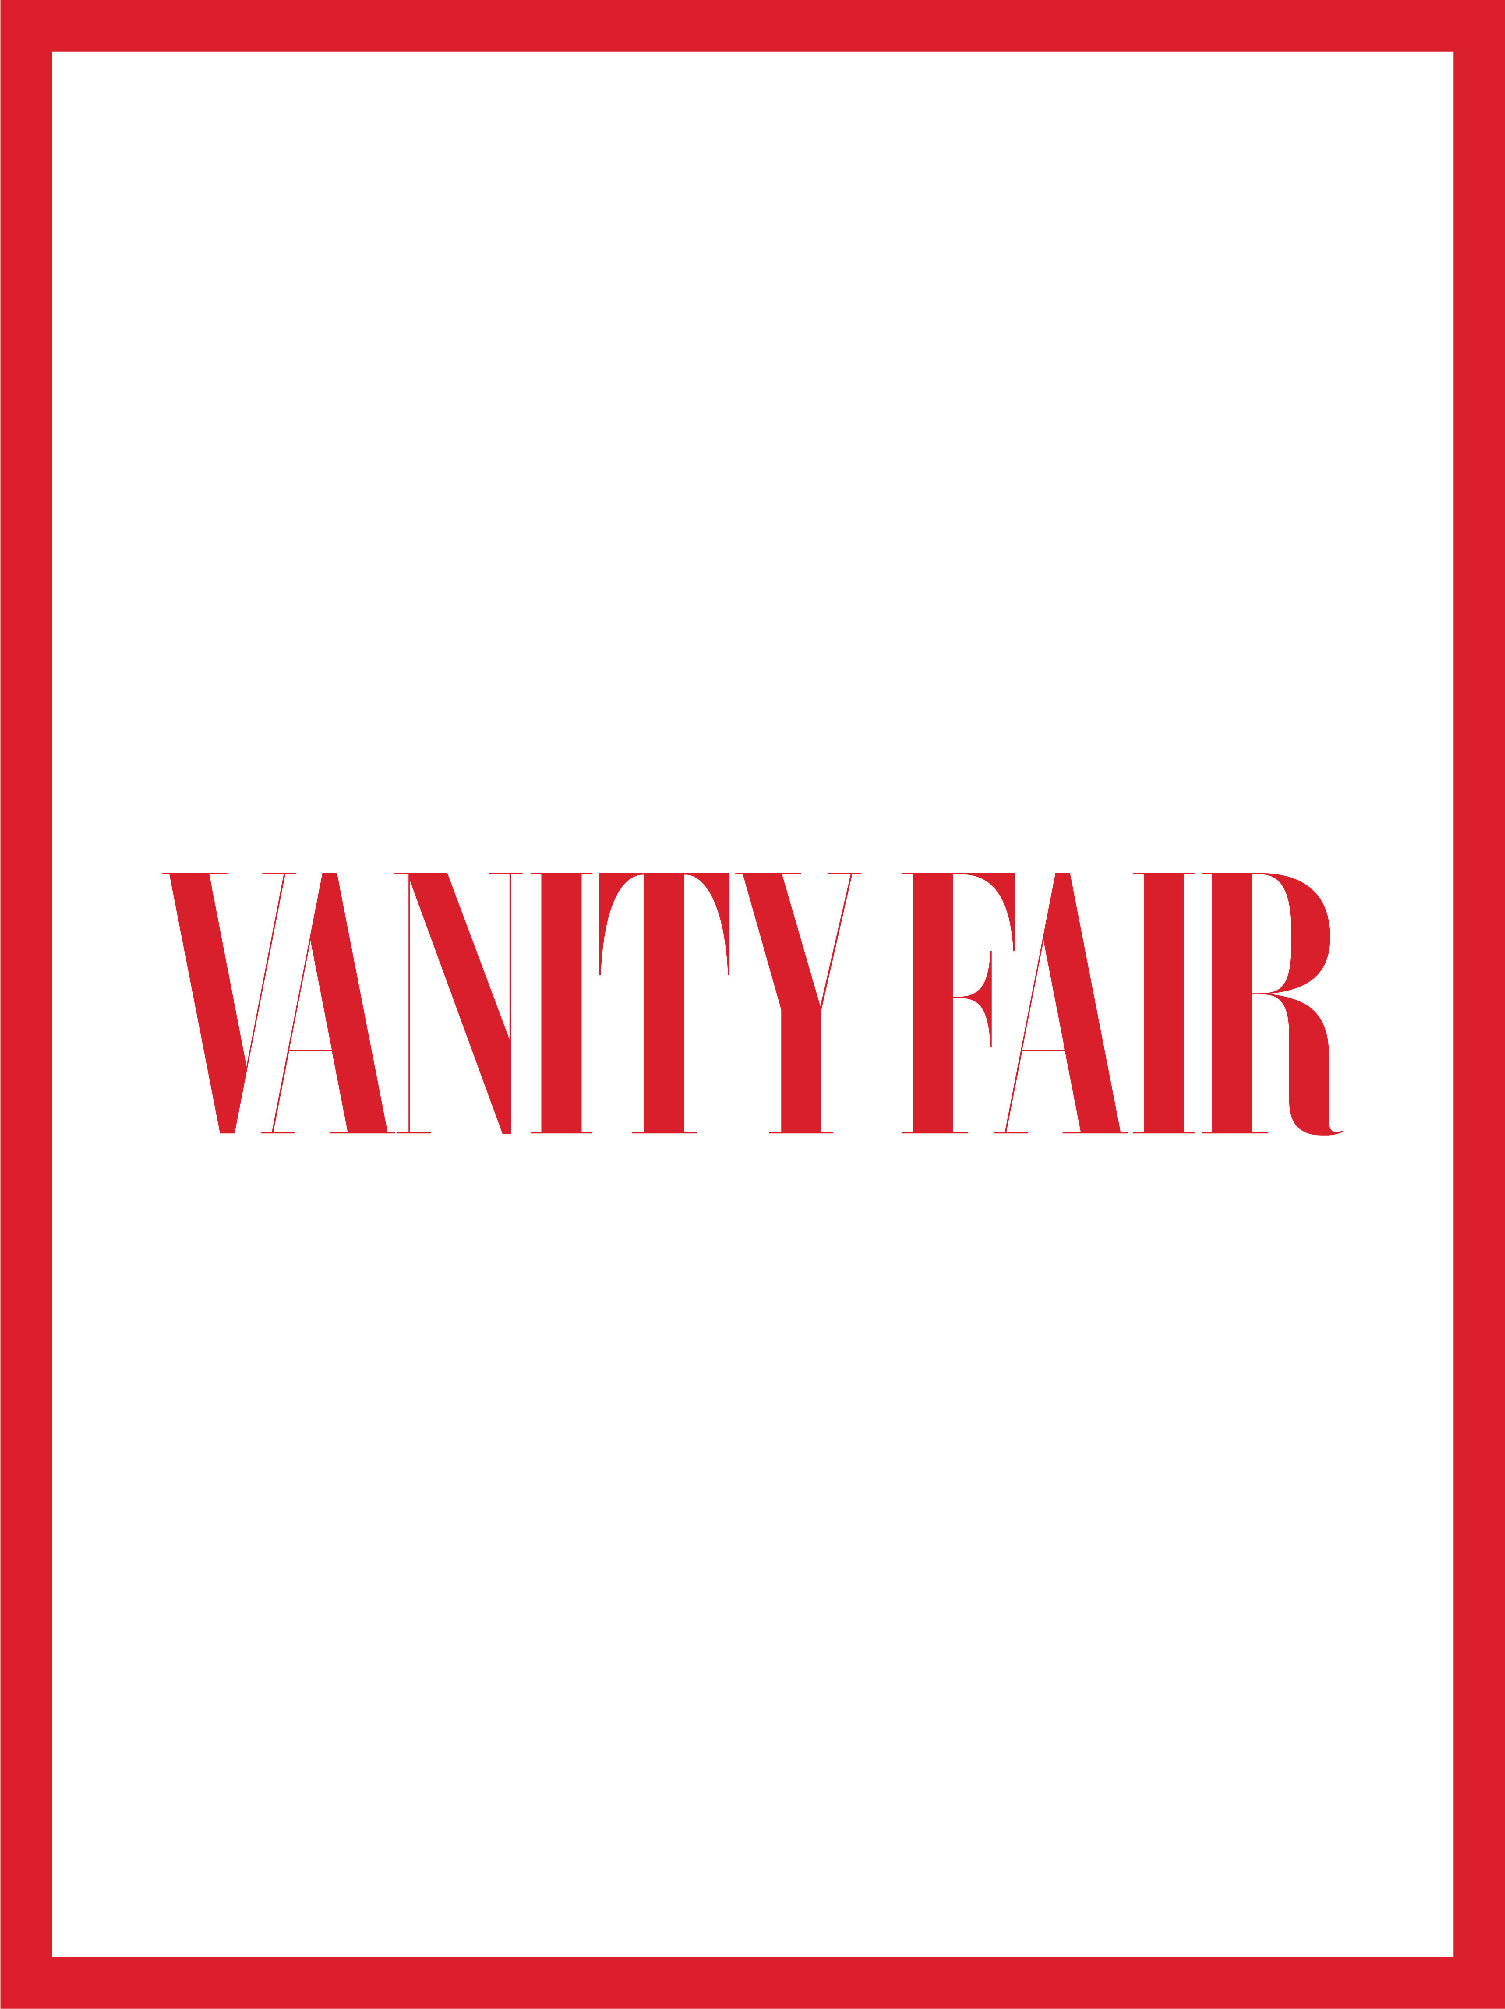 couverture et logo vanity fair